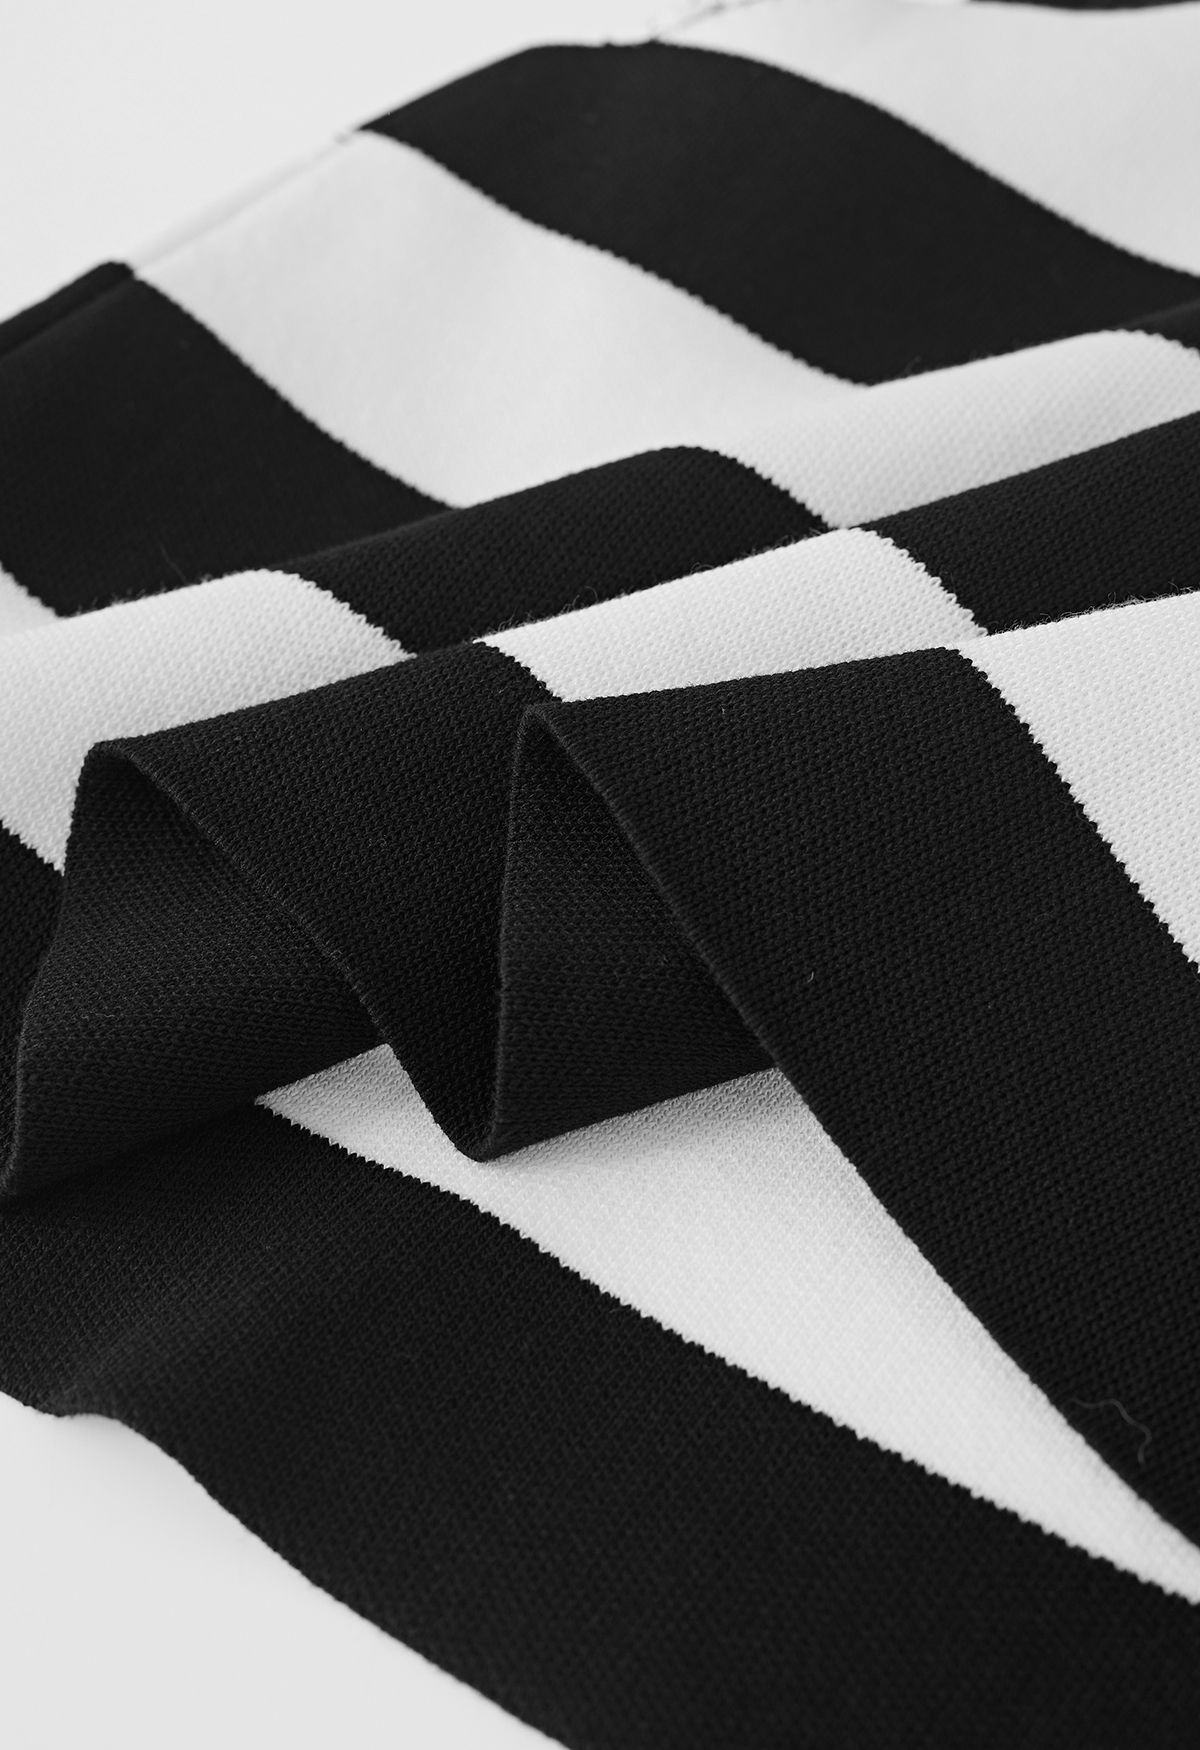 V-Neck Striped Knit Vest in Black